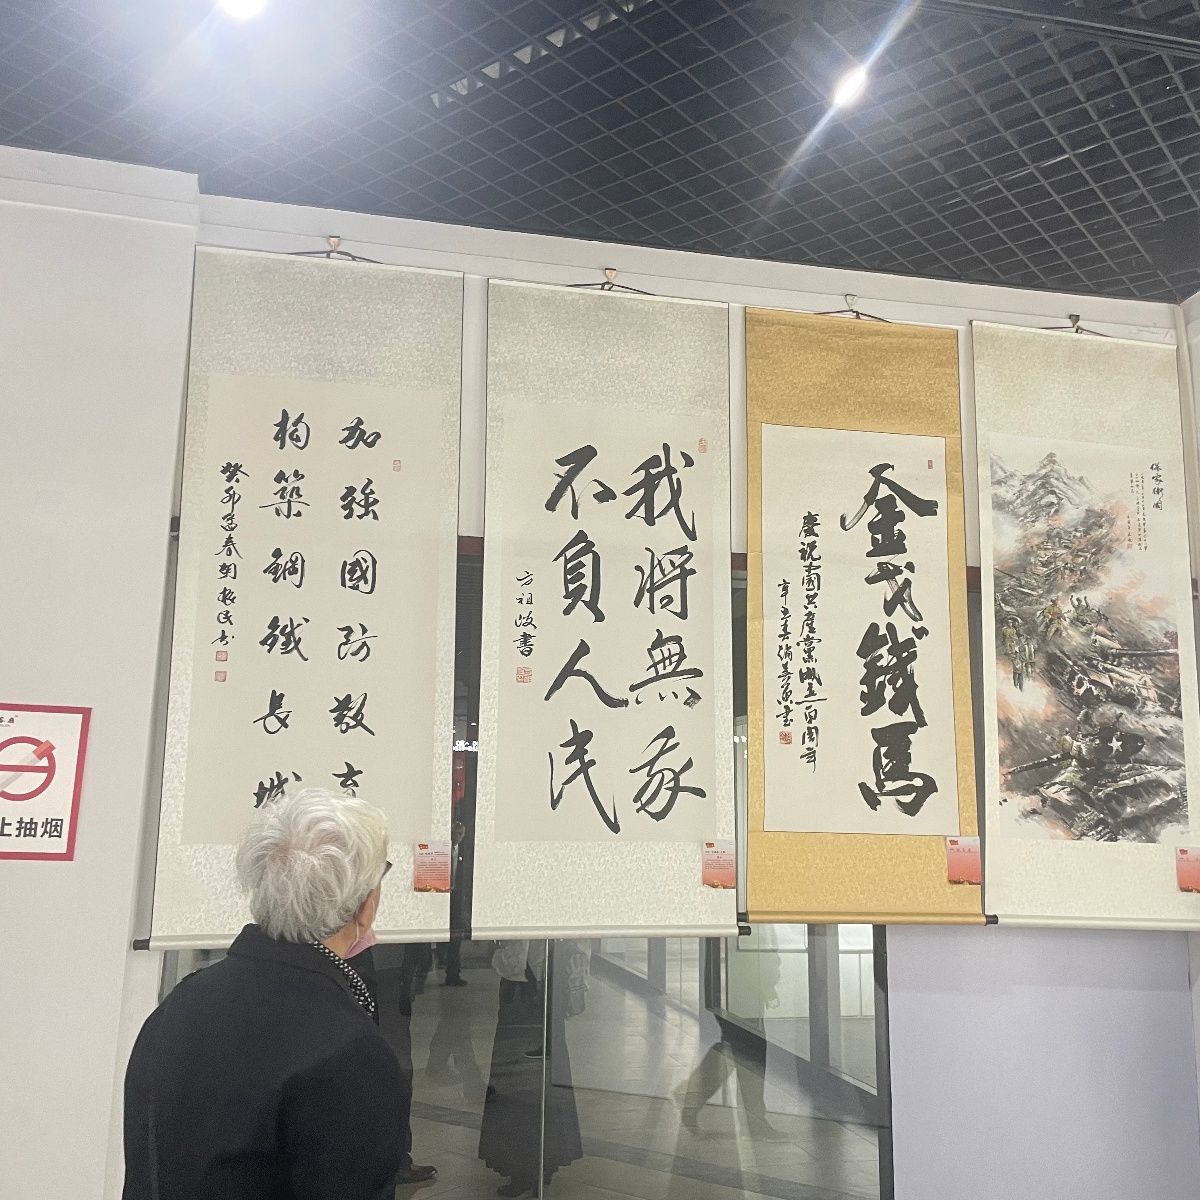 中国名家·共和国将军书画艺术展在武汉客厅隆重开幕 为期20天